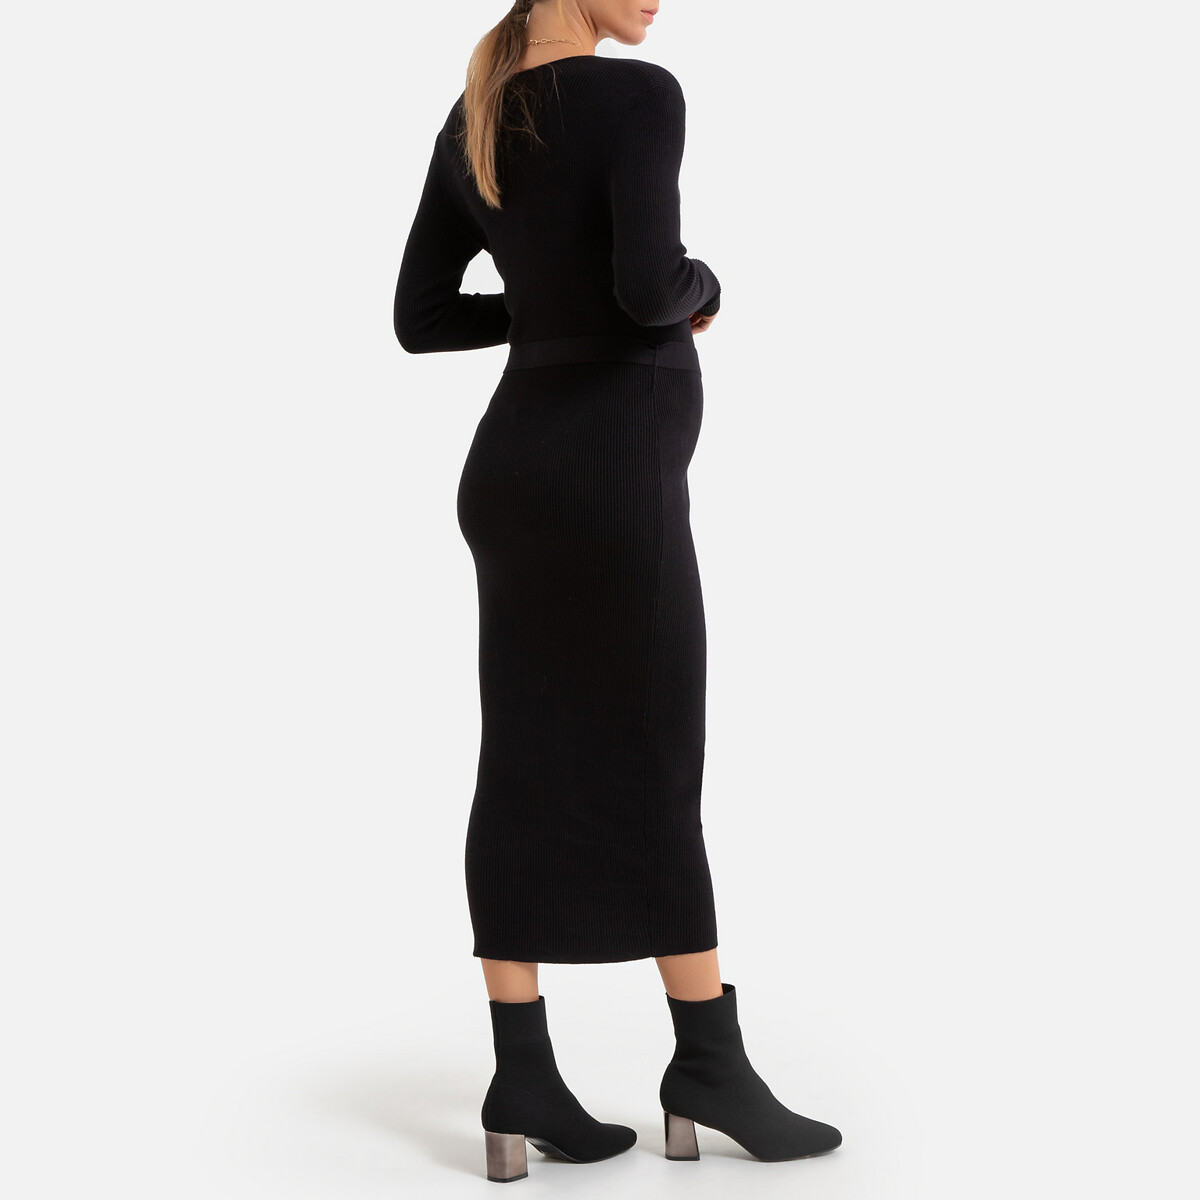 Платье-пуловер La Redoute Длинное для периода беременности длинные рукава S черный, размер S - фото 4